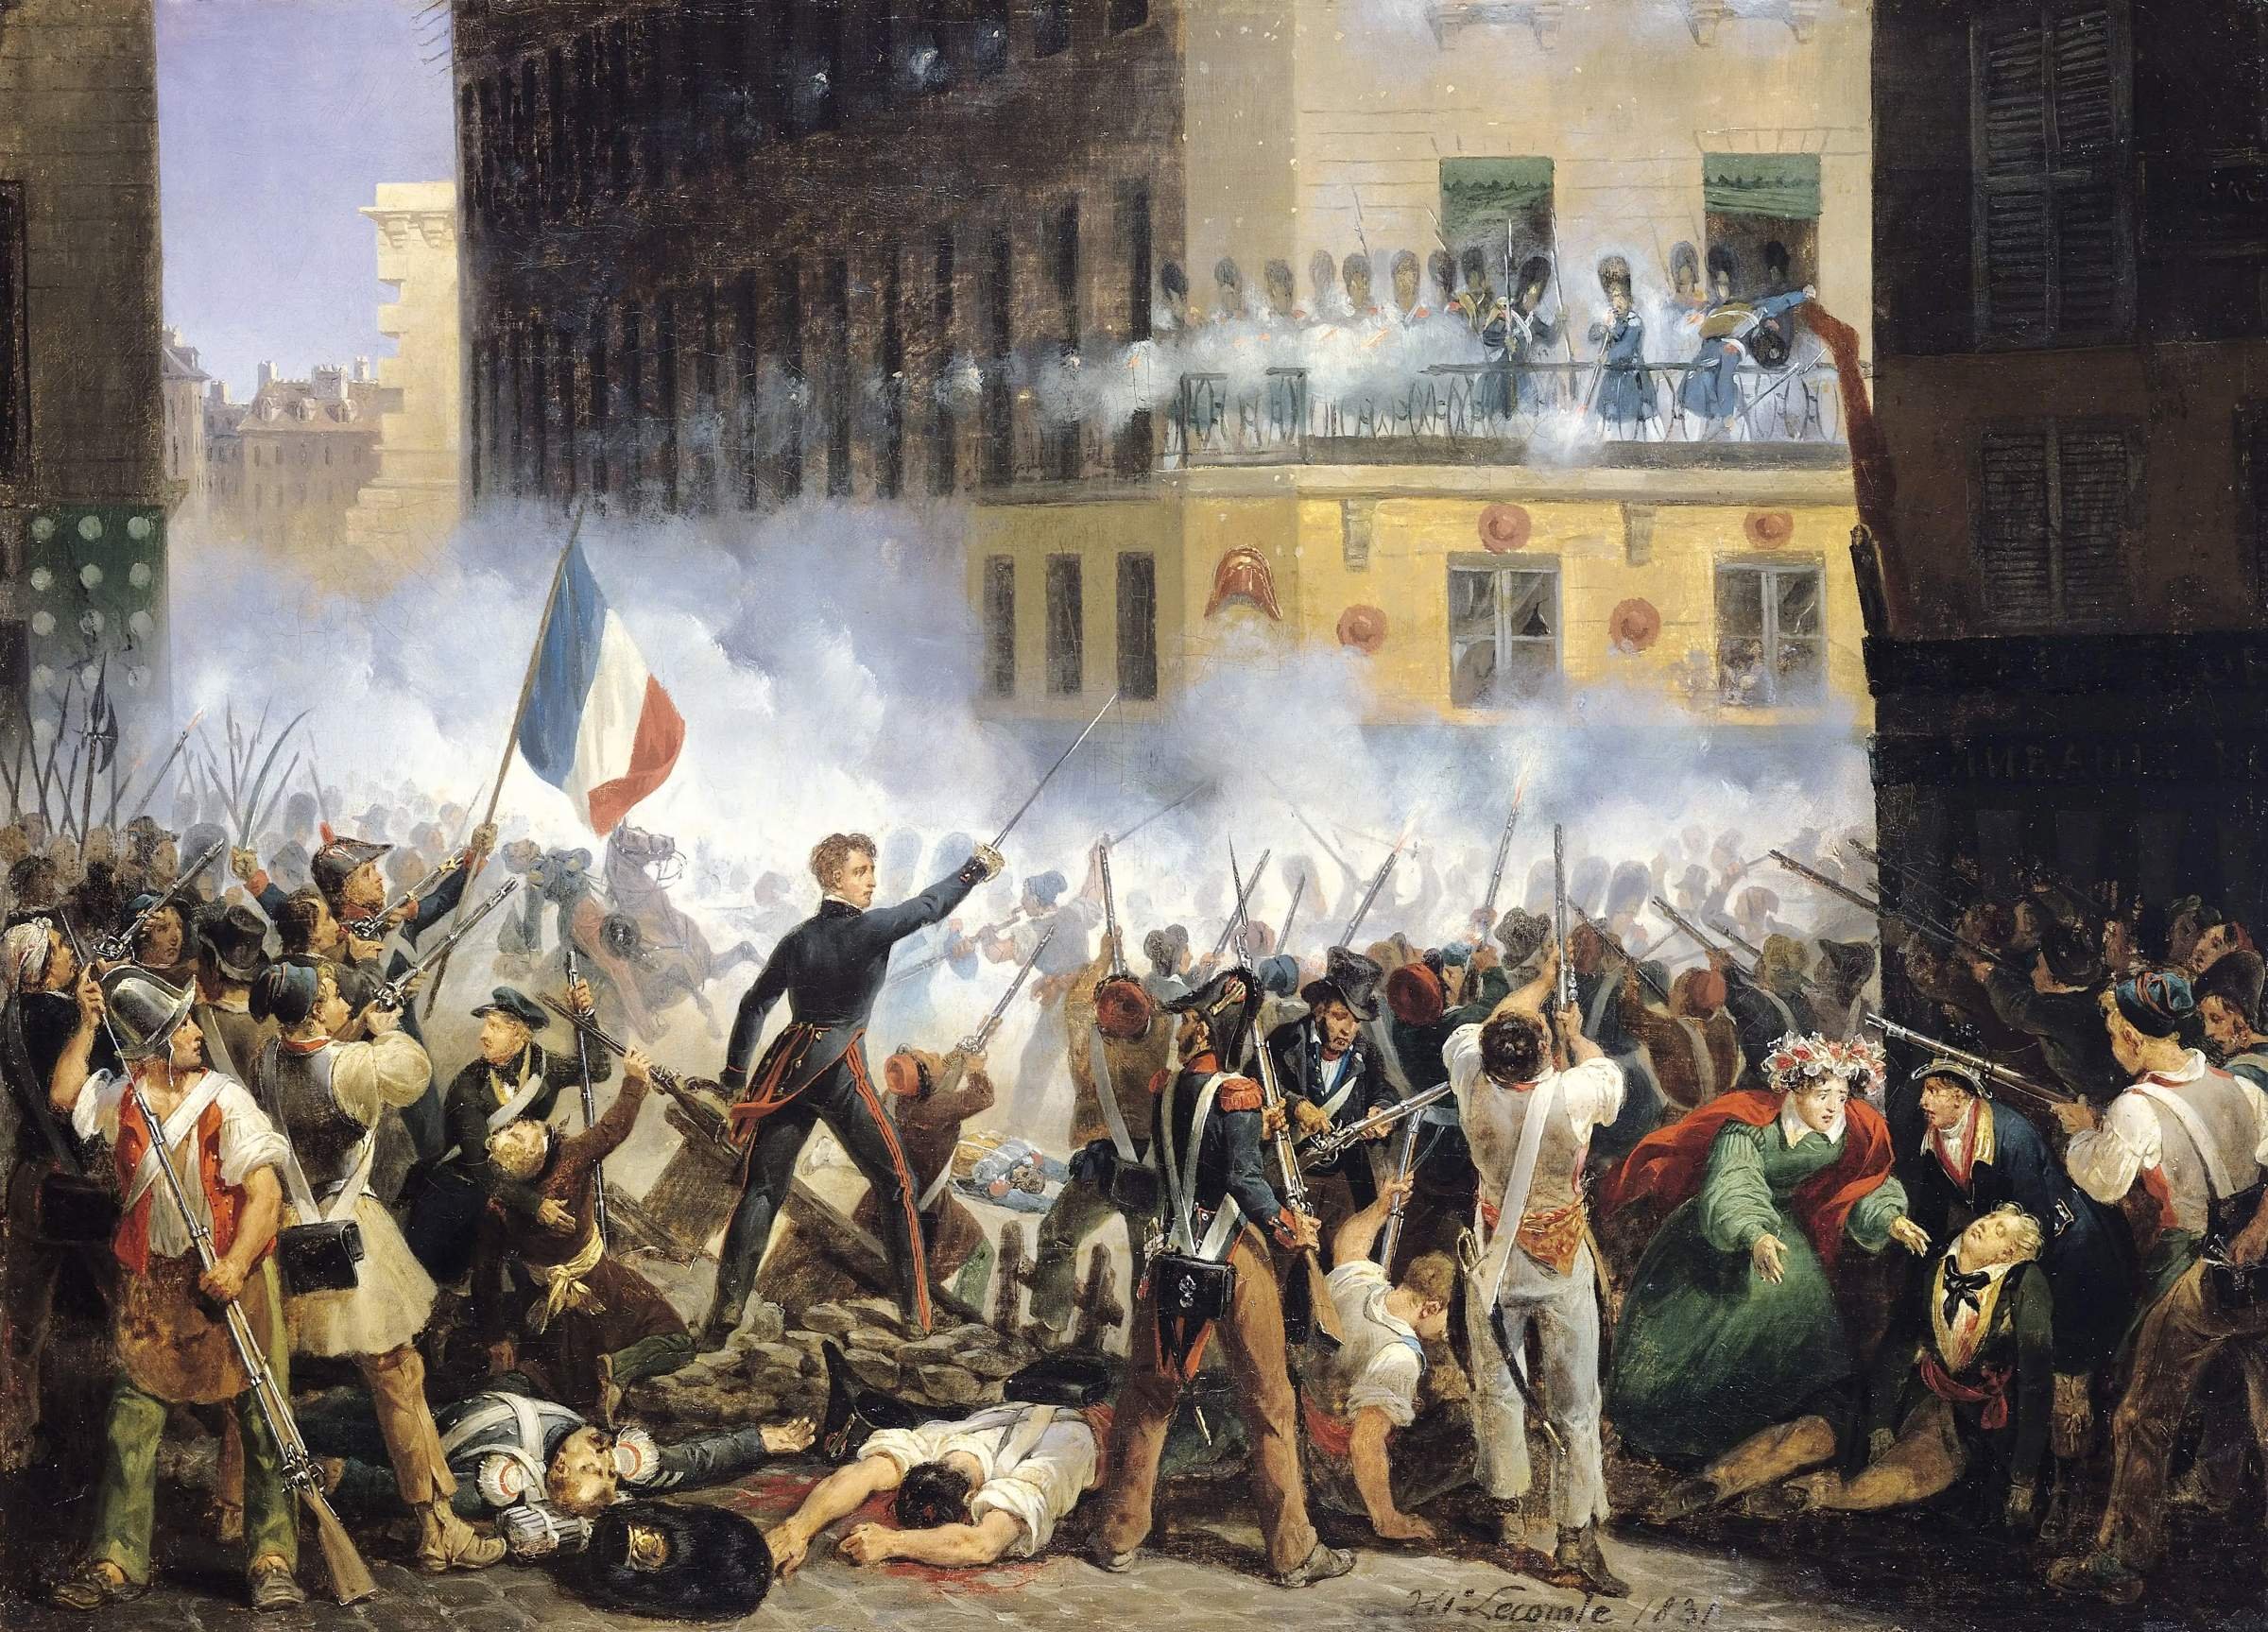 Великая французская революция конца 18 века. Революция 1830 г во Франции. Июльская революция 1830. Великая французская революция 1789-1799. Июльская революция 1830 г. во Франции.